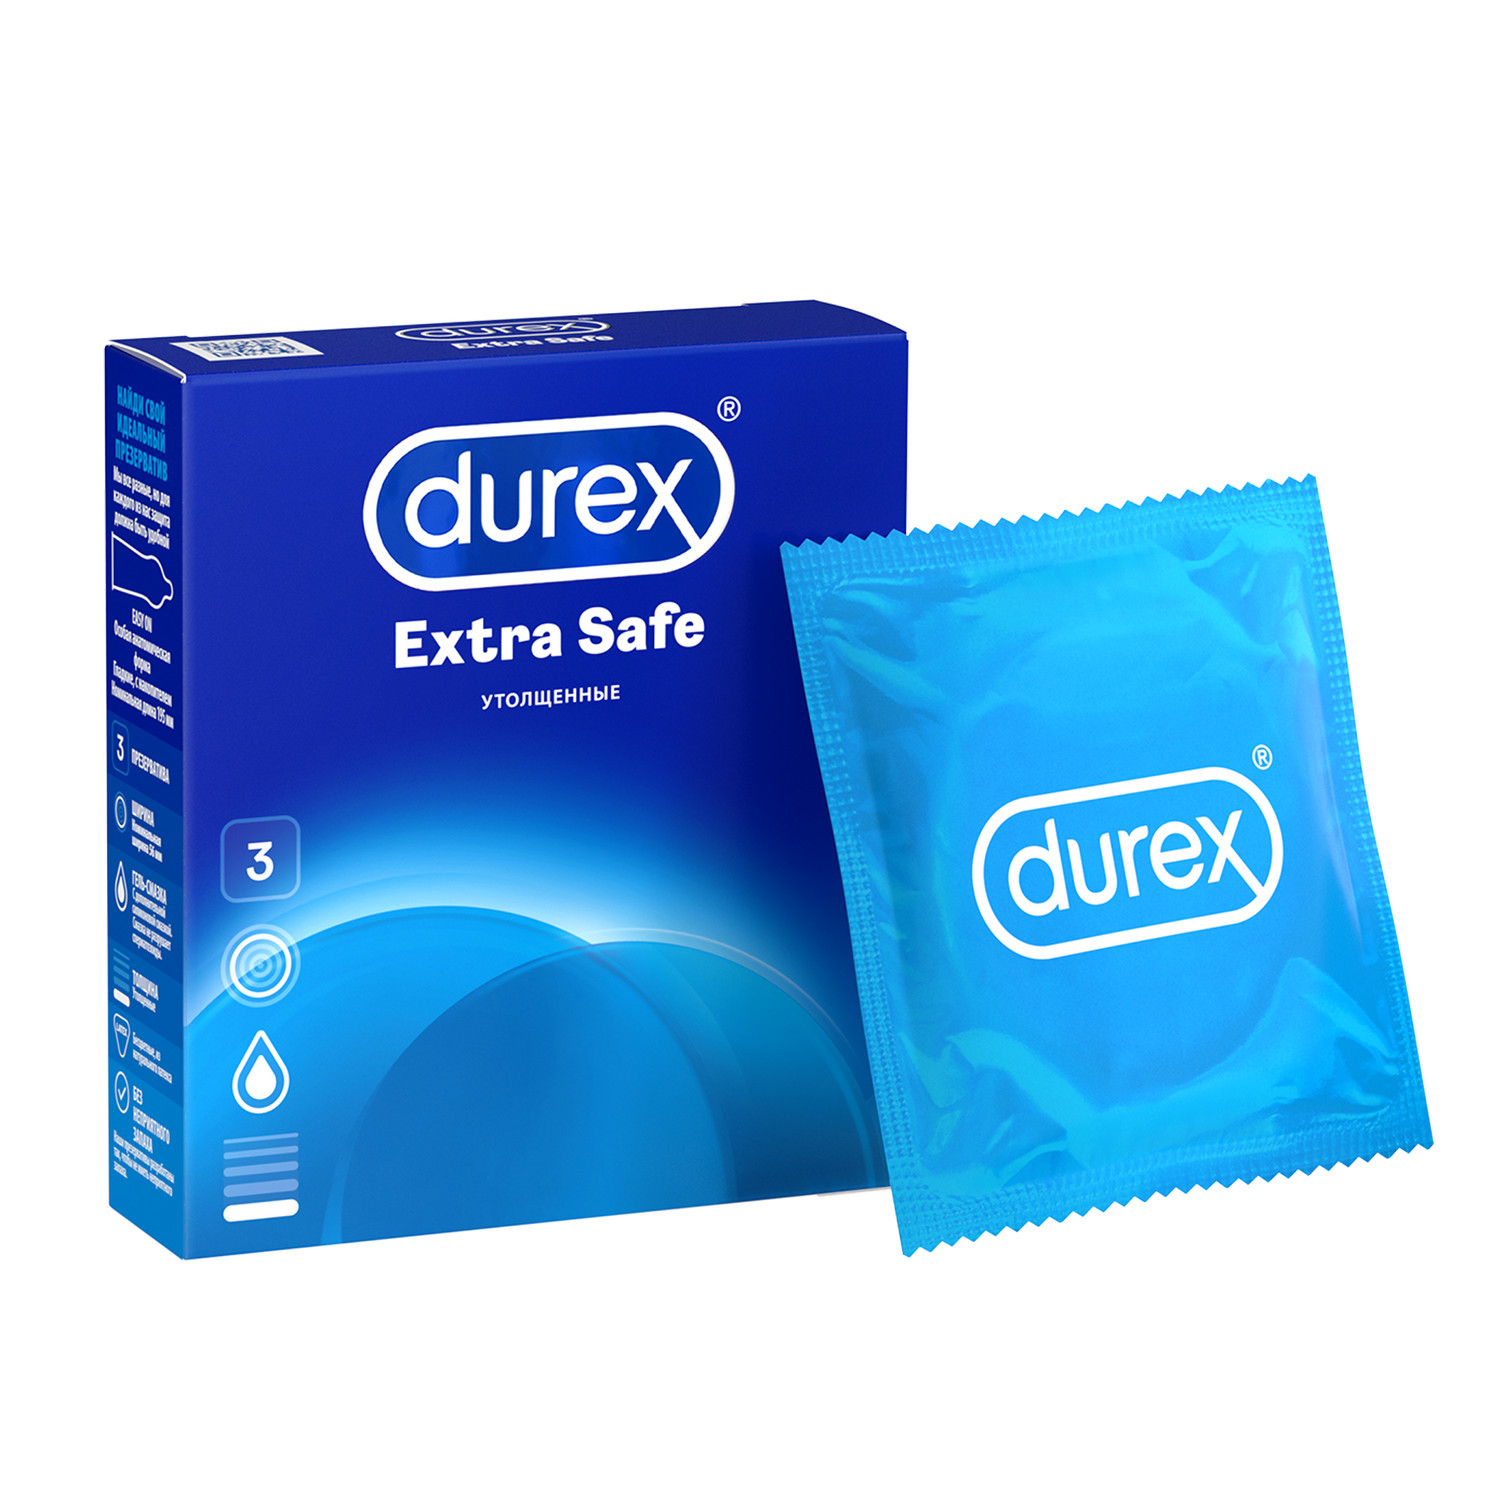 Презервативы Durex Extra Safe утолщенные, 3 шт.